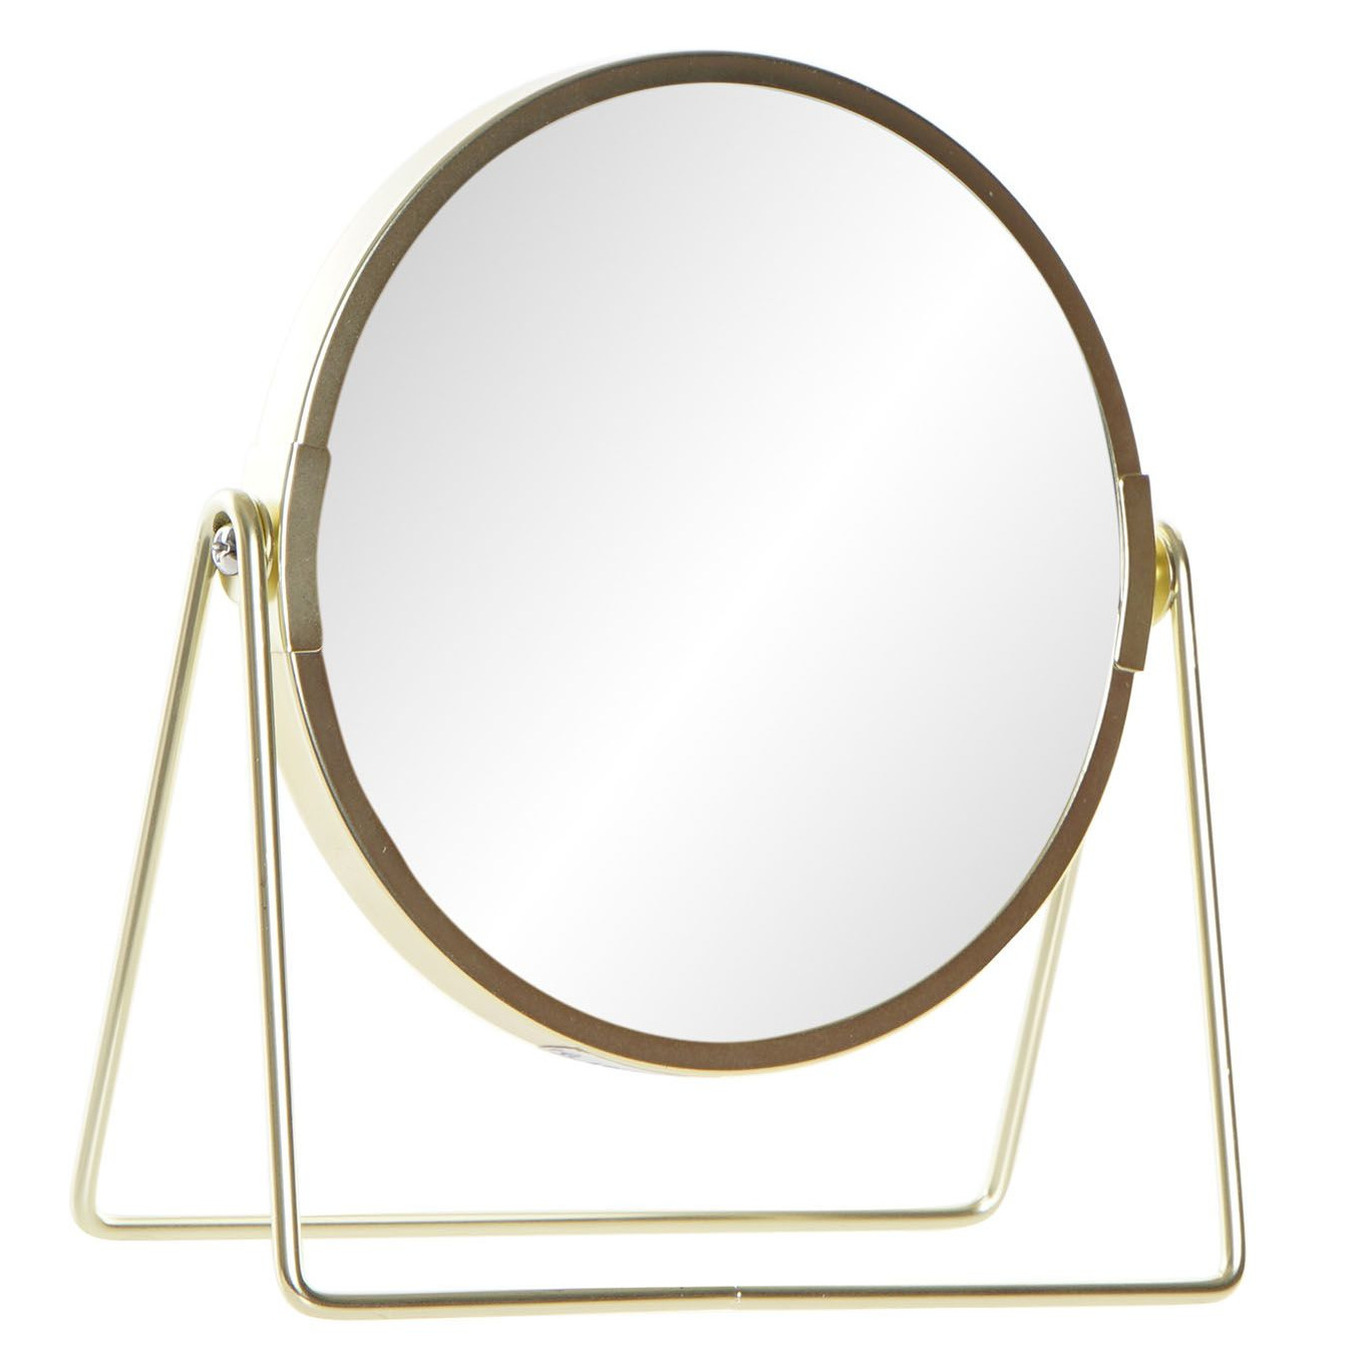 Badkamerspiegel / make-up spiegel rond dubbelzijdig RVS goud D15 x H21 cm